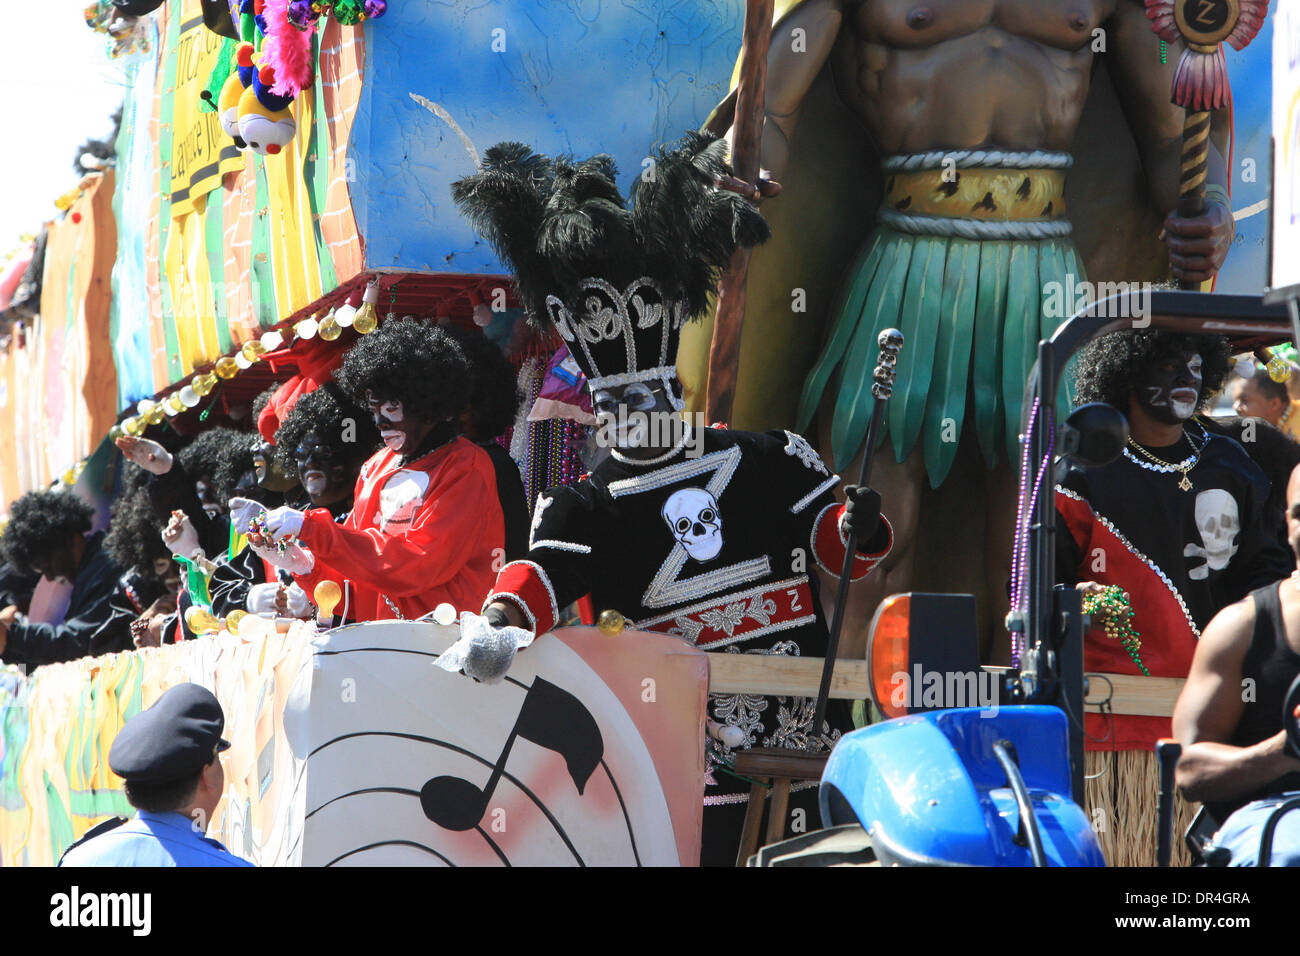 24. Februar 2009 gerollt - New Orleans, Louisiana, USA - Szenen aus der Zulu-Parade wie es entlang der St. Charles Avenue Paradestrecke wirft Perlen, Kokosnüsse und verschiedene Kleinigkeiten am Karneval-Tag in New Orleans, Louisiana gemalt. Karneval ist eine jährliche Feier, die um Mitternacht mit dem Start der katholischen Fastenzeit endet mit dem Aschermittwoch beginnt und endet mit Ostern. Stockfoto